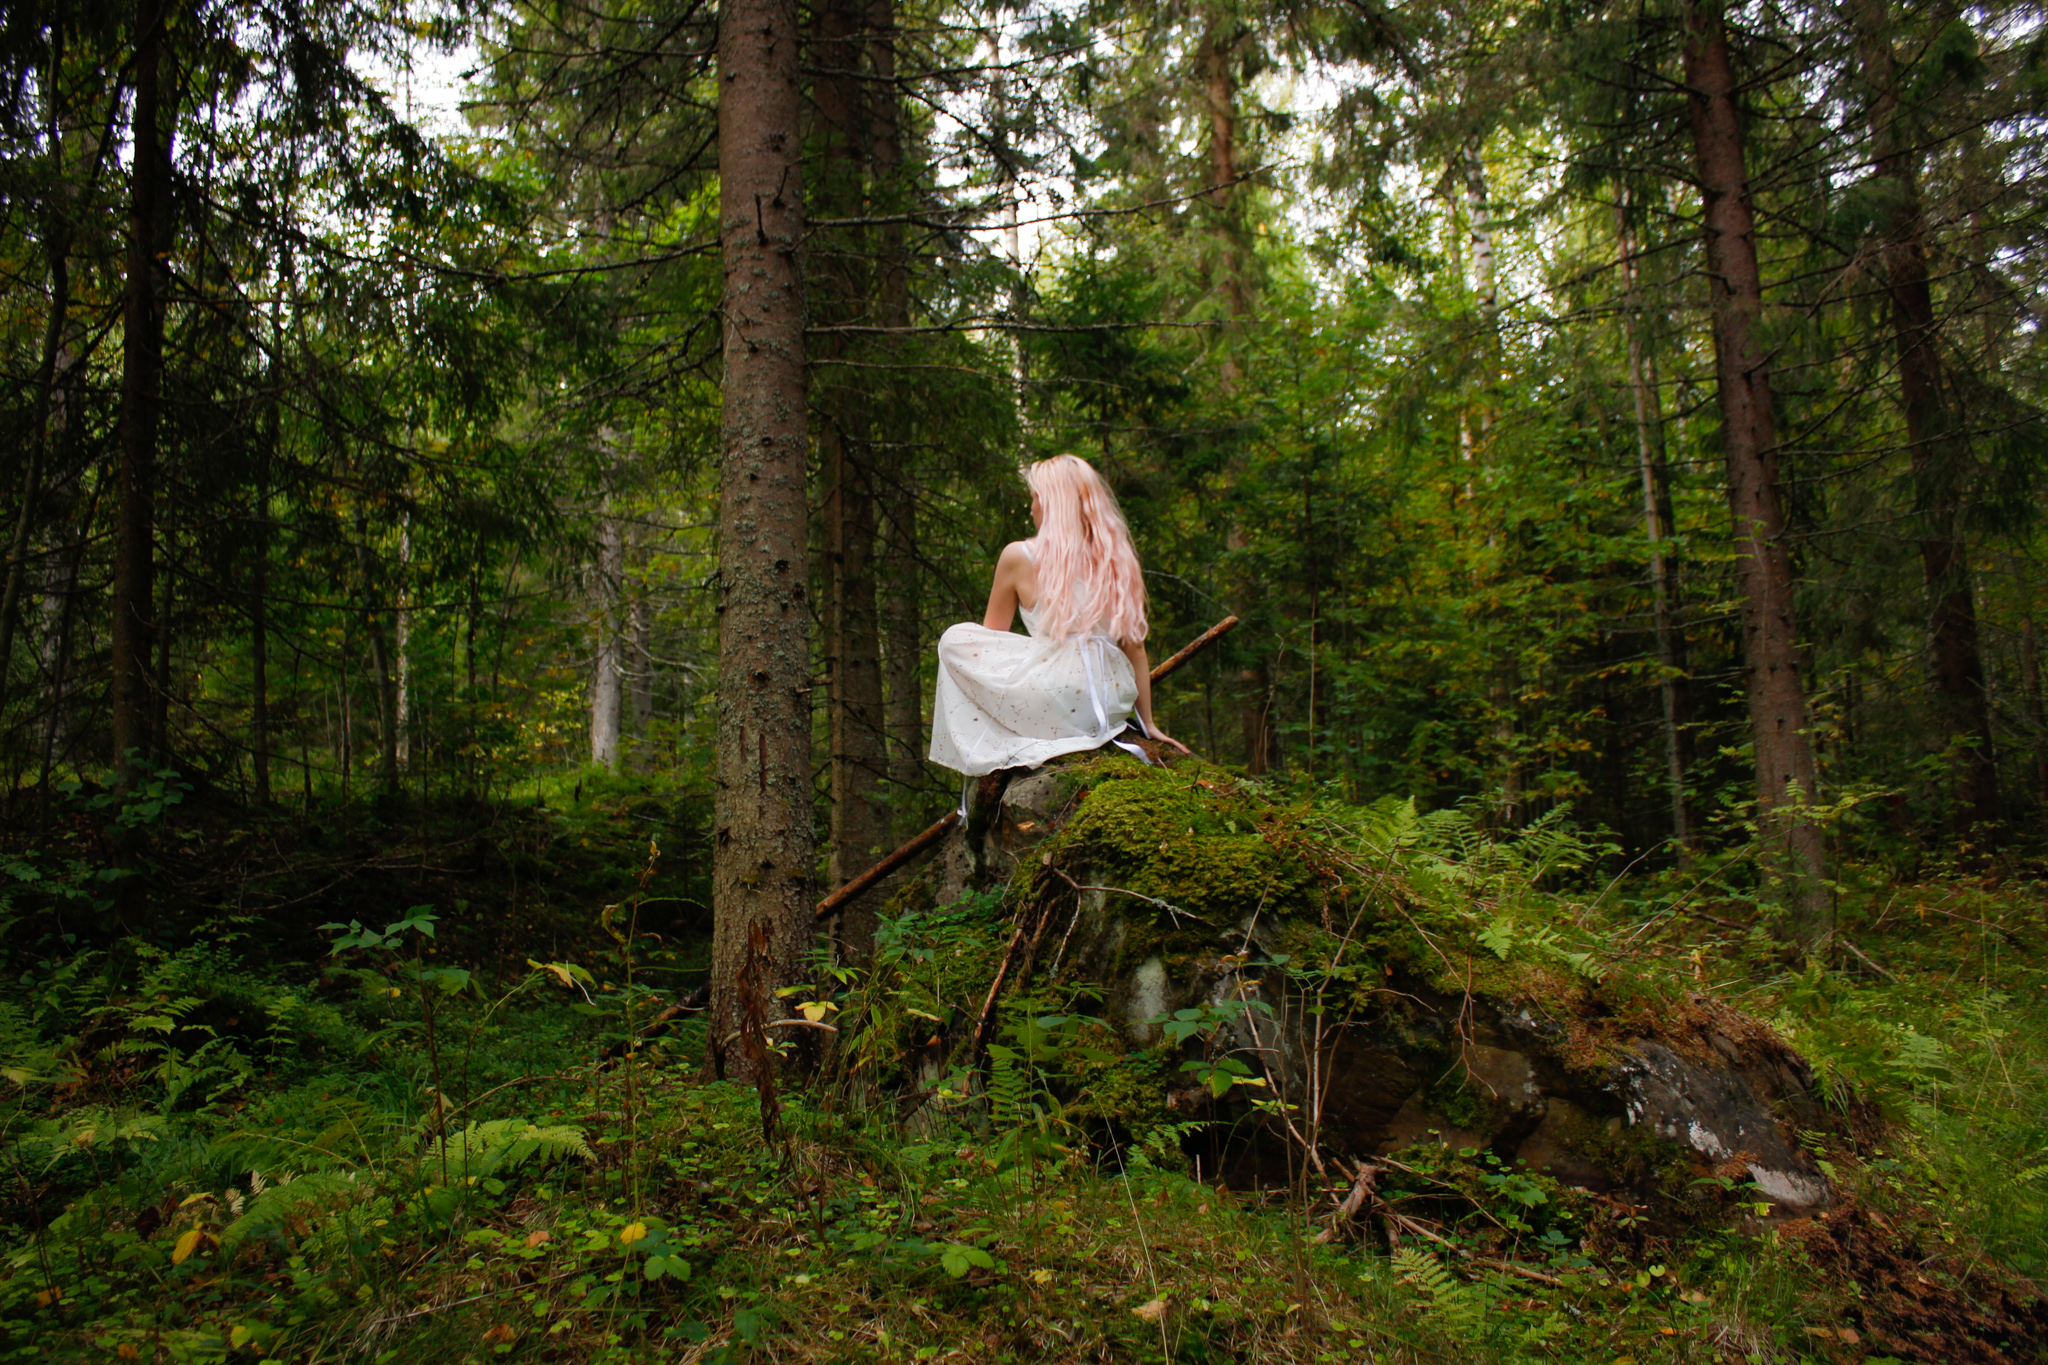 Henkilö istuu kiven päällä metsässä selkä kuvaajan päin. Hänellä on yllään mekko ja pitkät hiukset auki selkää vasten.